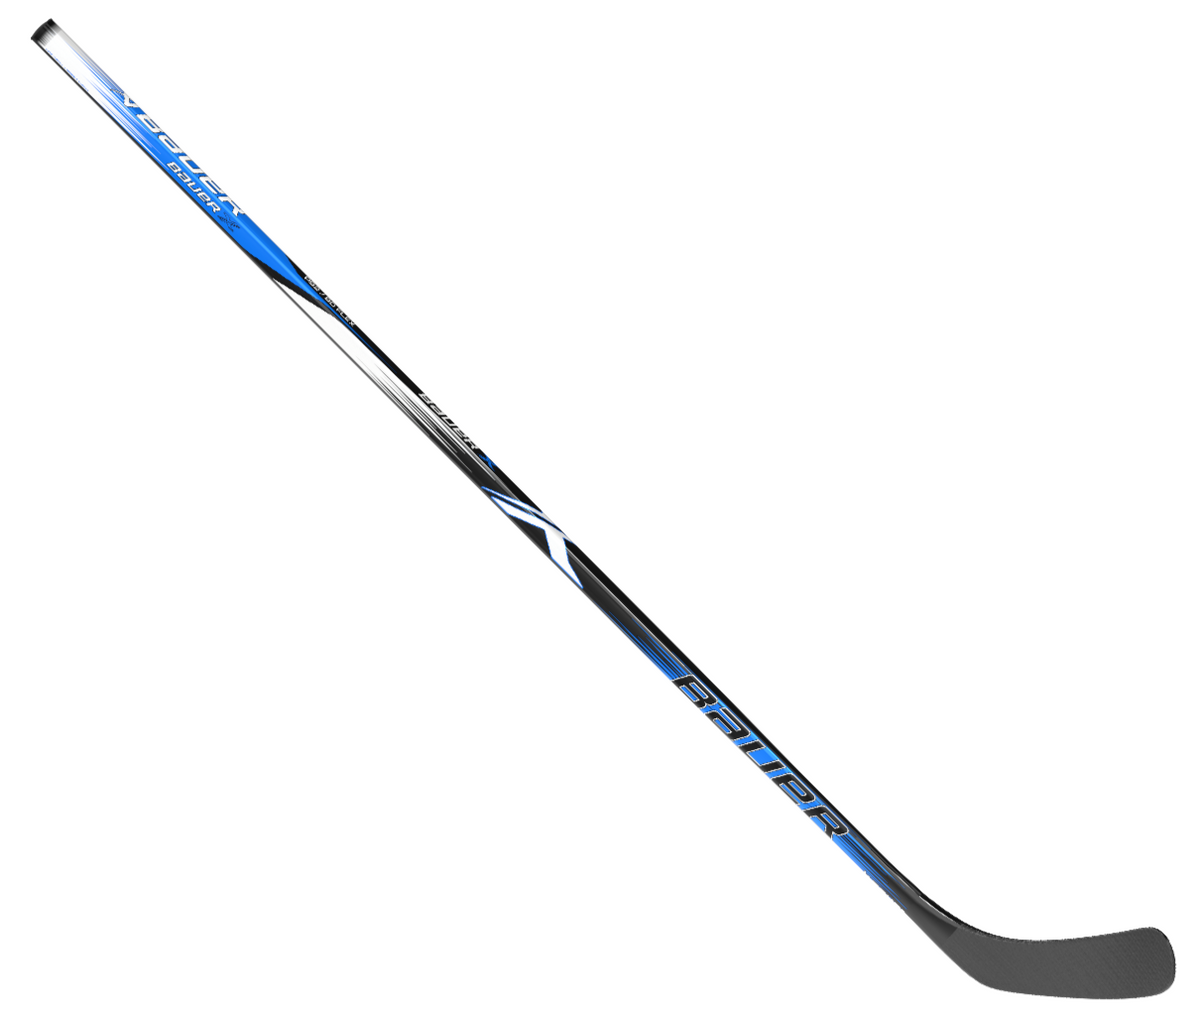 Bauer X Series Senior Hockey Stick